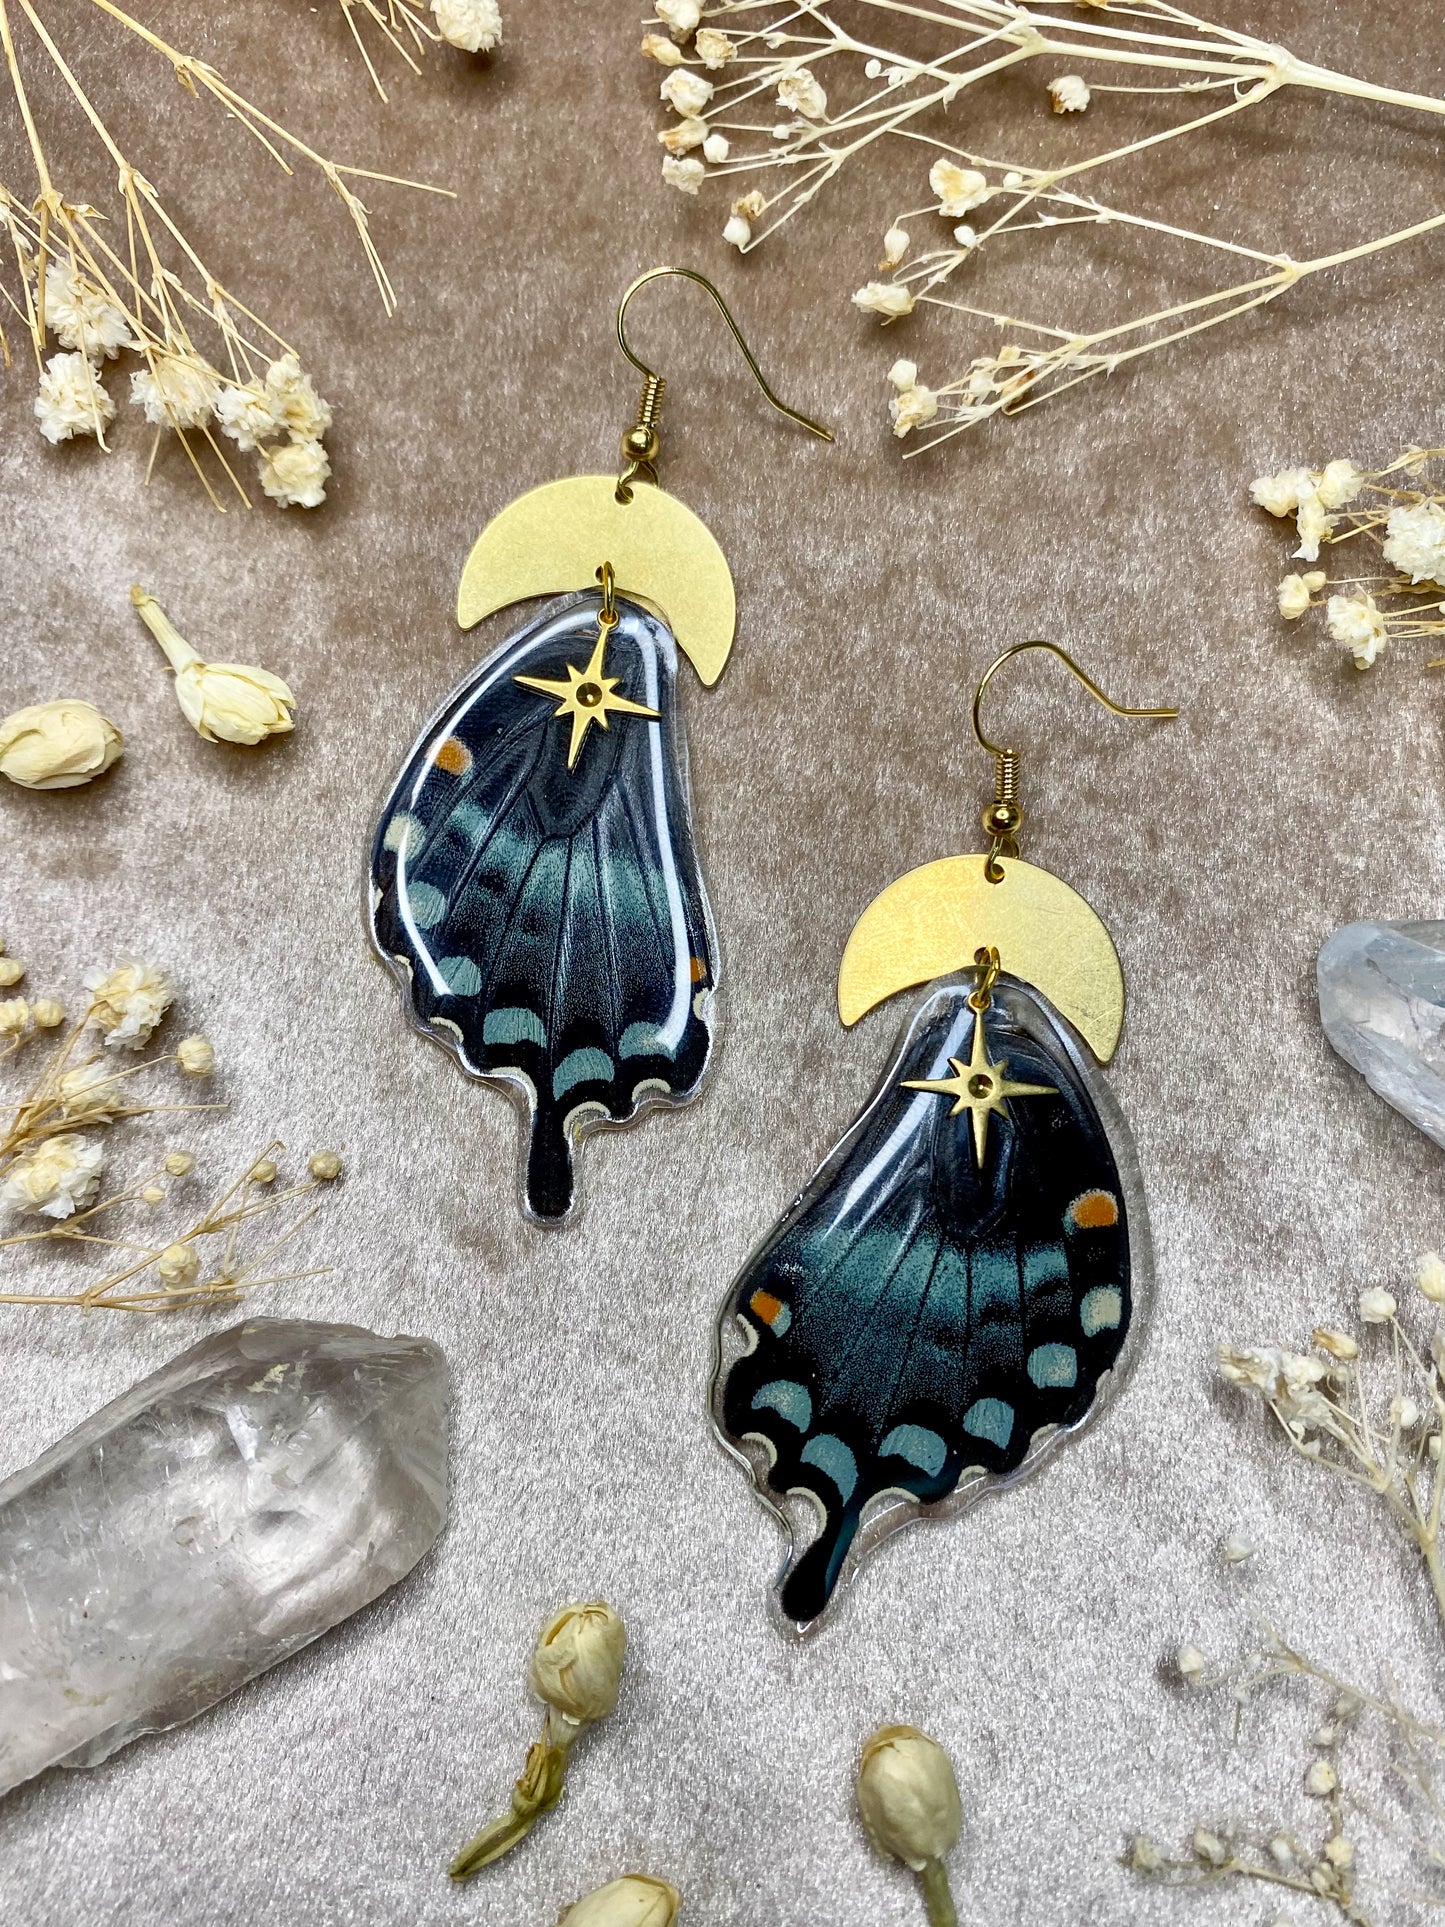 Spicebush Swallow Tail Butterfly Earrings (Blue Side)